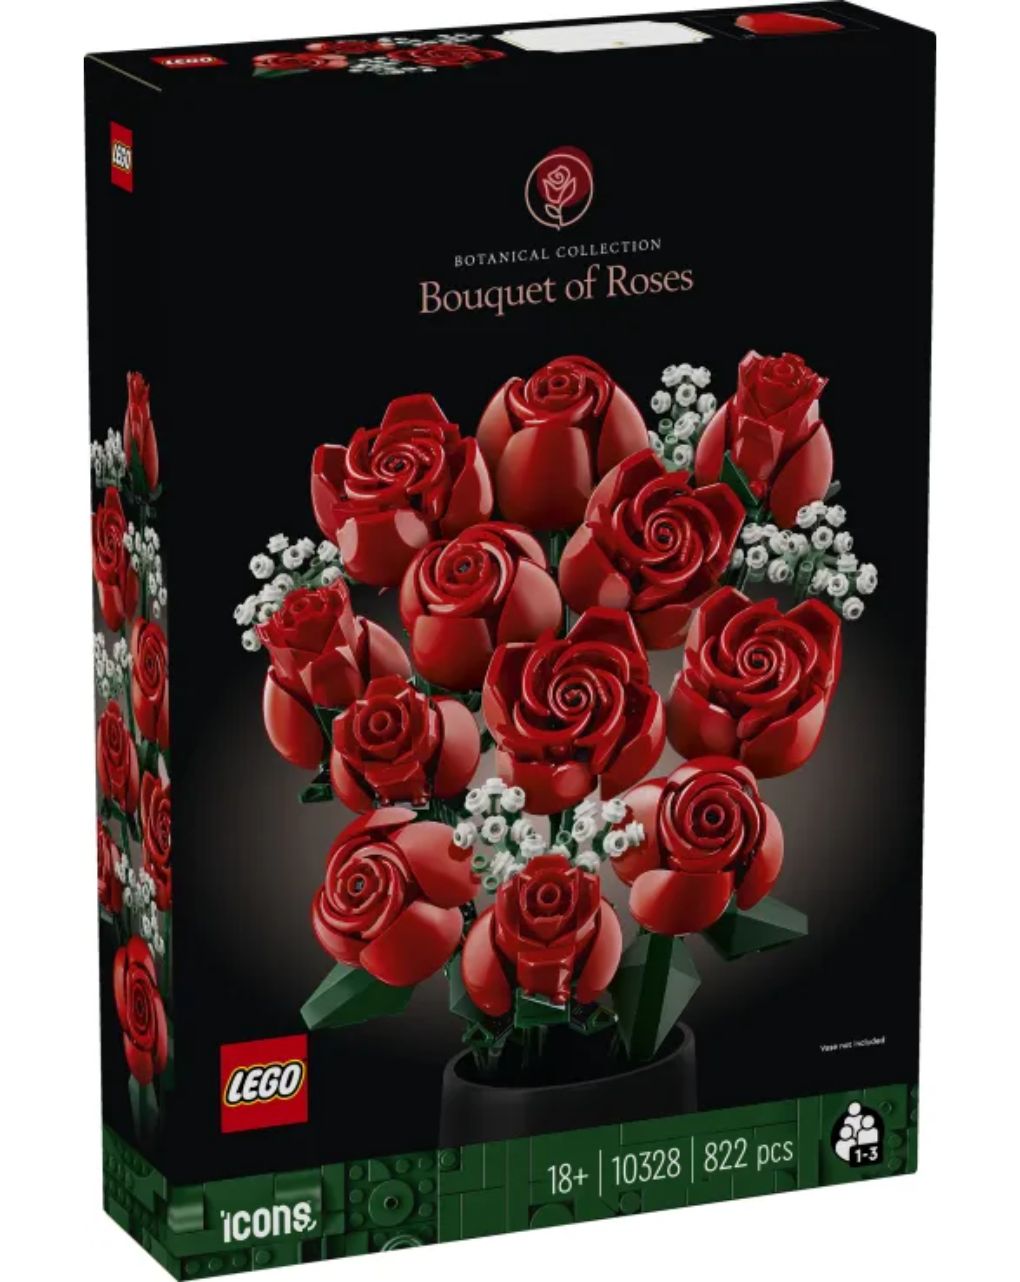 Lego icons botanical bouquet of roses 10328 - LEGO ICONS